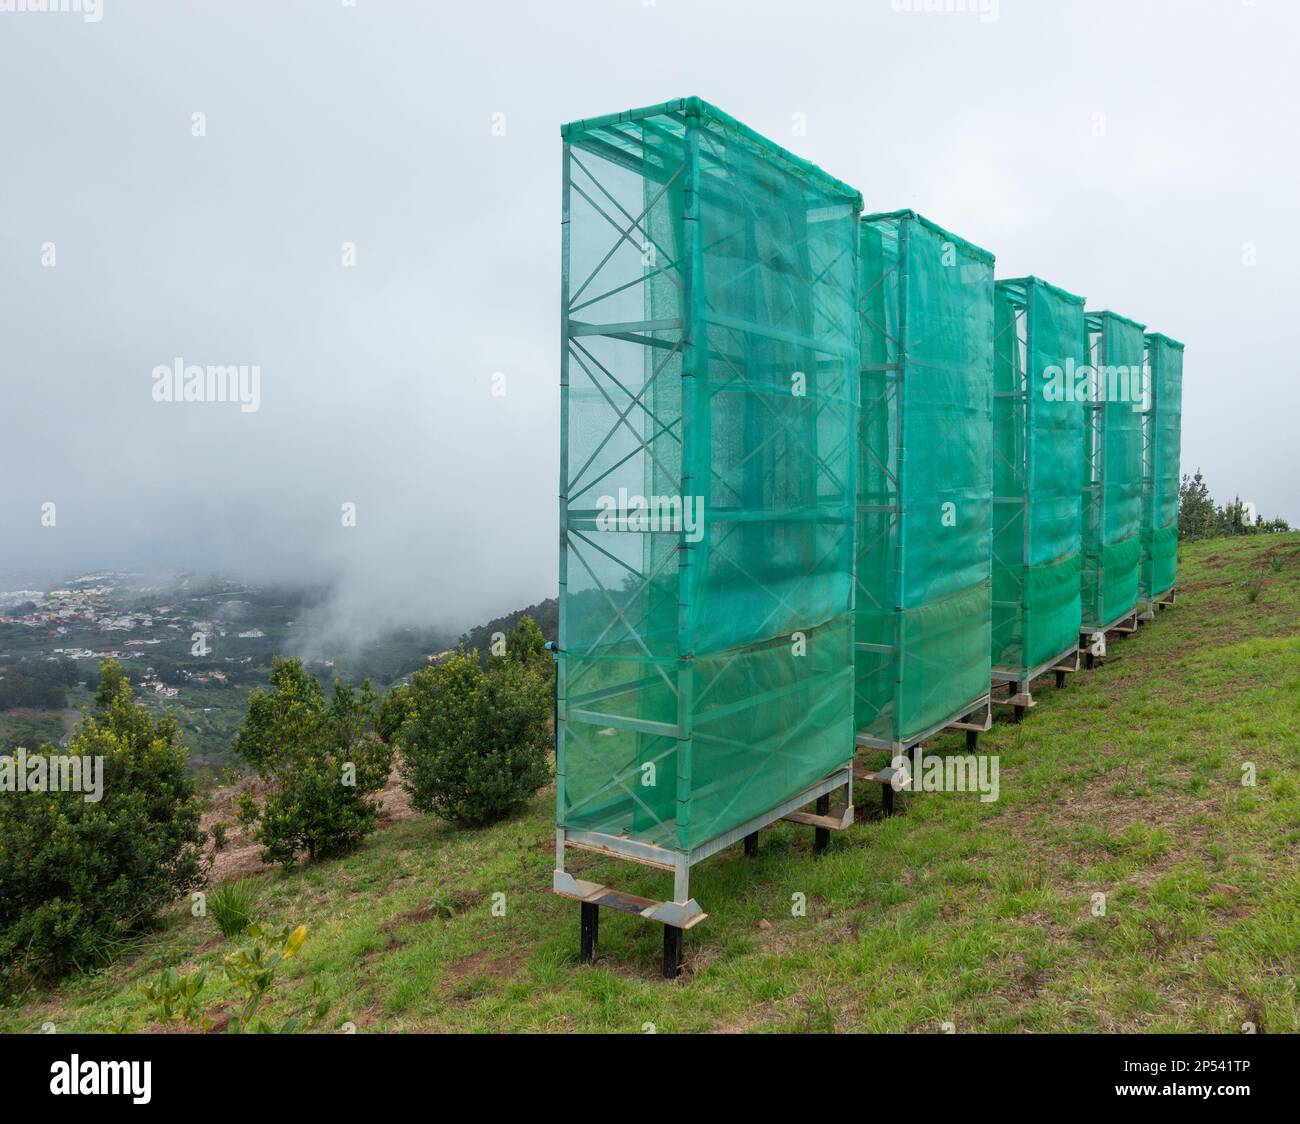 Raccolta di nubi, reti antinebbia, reti utilizzate per raccogliere l'acqua dalle nubi basse/nebbia/nebbia in montagna a Gran Canaria, Isole Canarie, Spagna Foto Stock